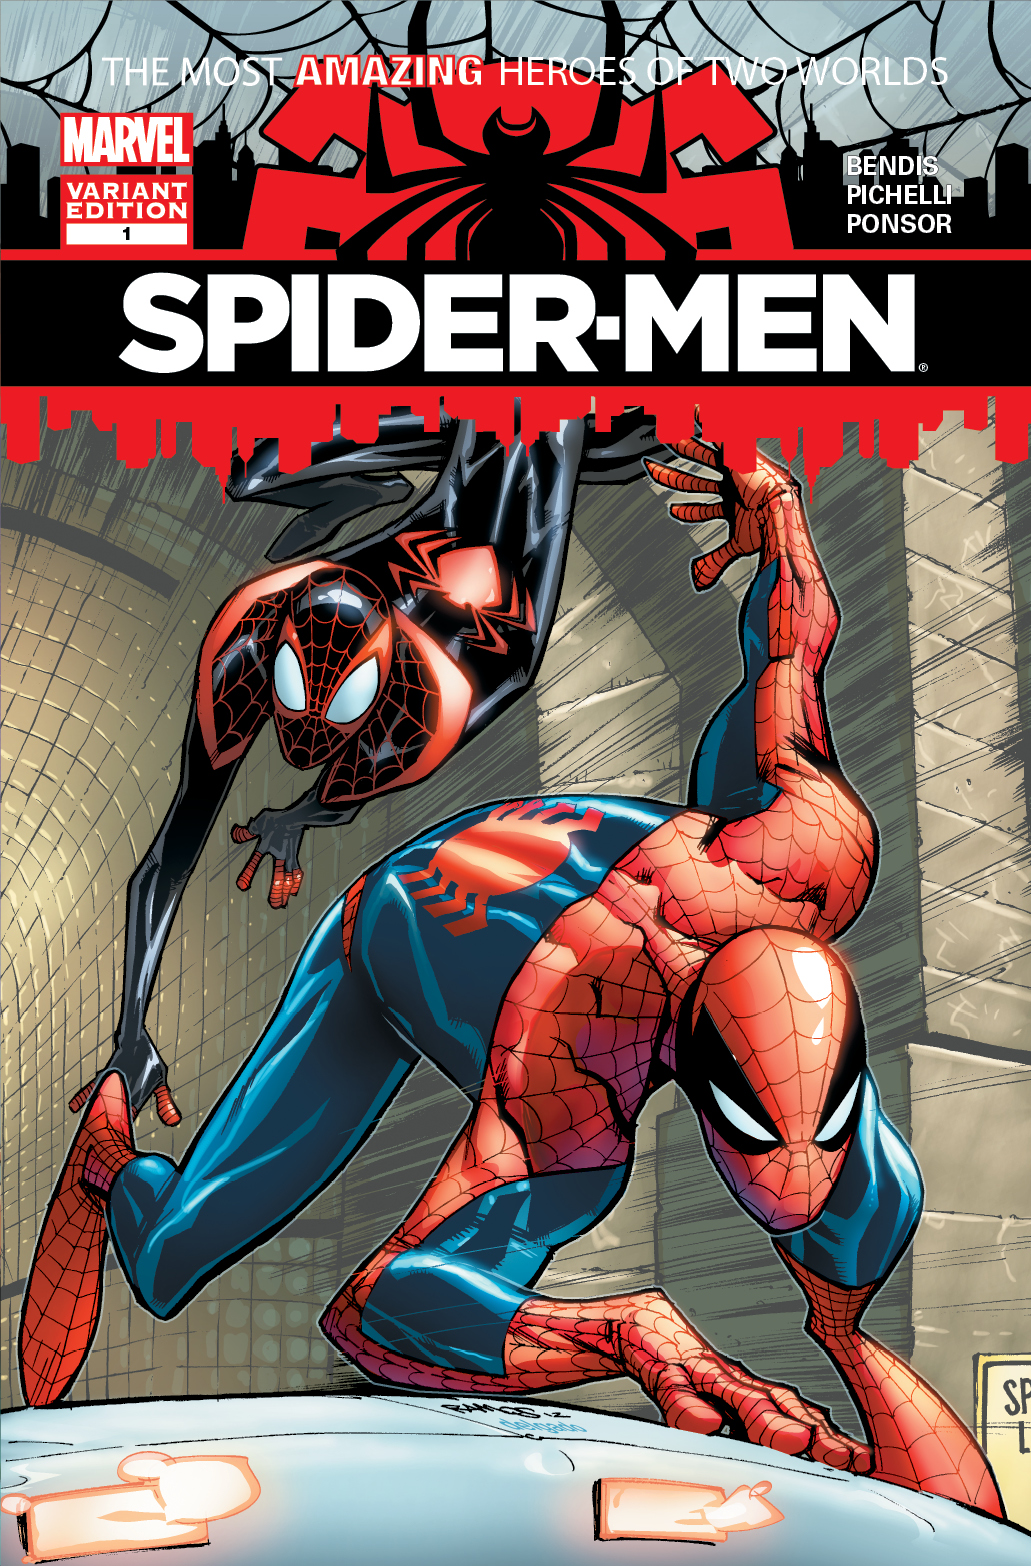 High Resolution Wallpaper | Spider-men 1031x1566 px